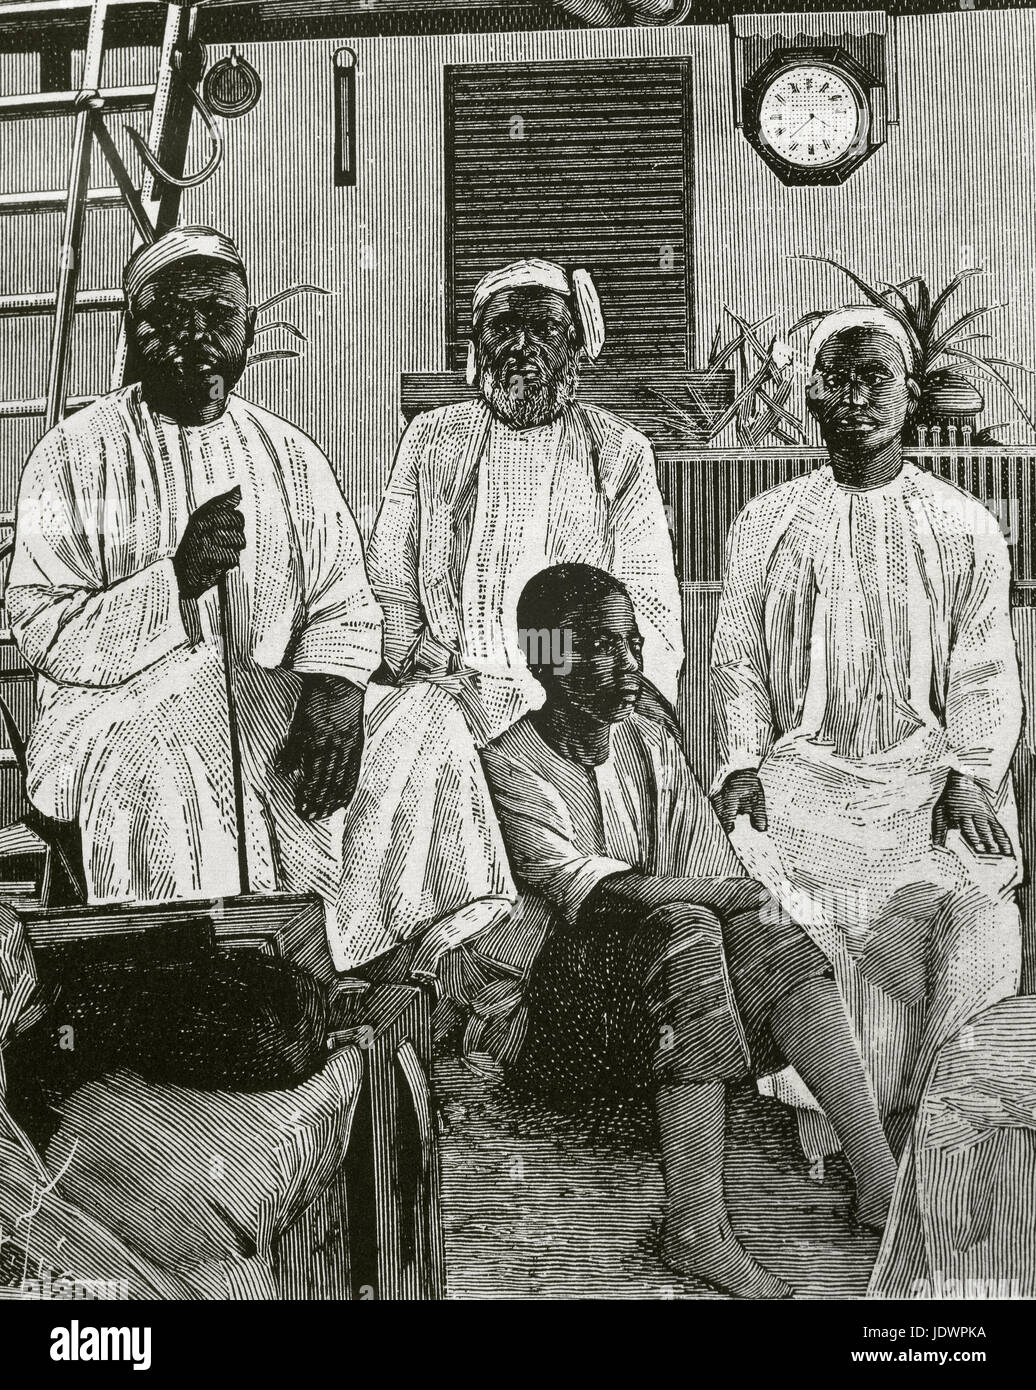 Tippu Tip (1832-1905). Swahili-Zanzibari marchand d'esclave. Un commerçant d'ivoire, explorer, propriétaire de plantation et le gouverneur. Tippu Tip avec ses collaborateurs. La gravure. 'Les grands dossiers de l'illustration". Banque D'Images